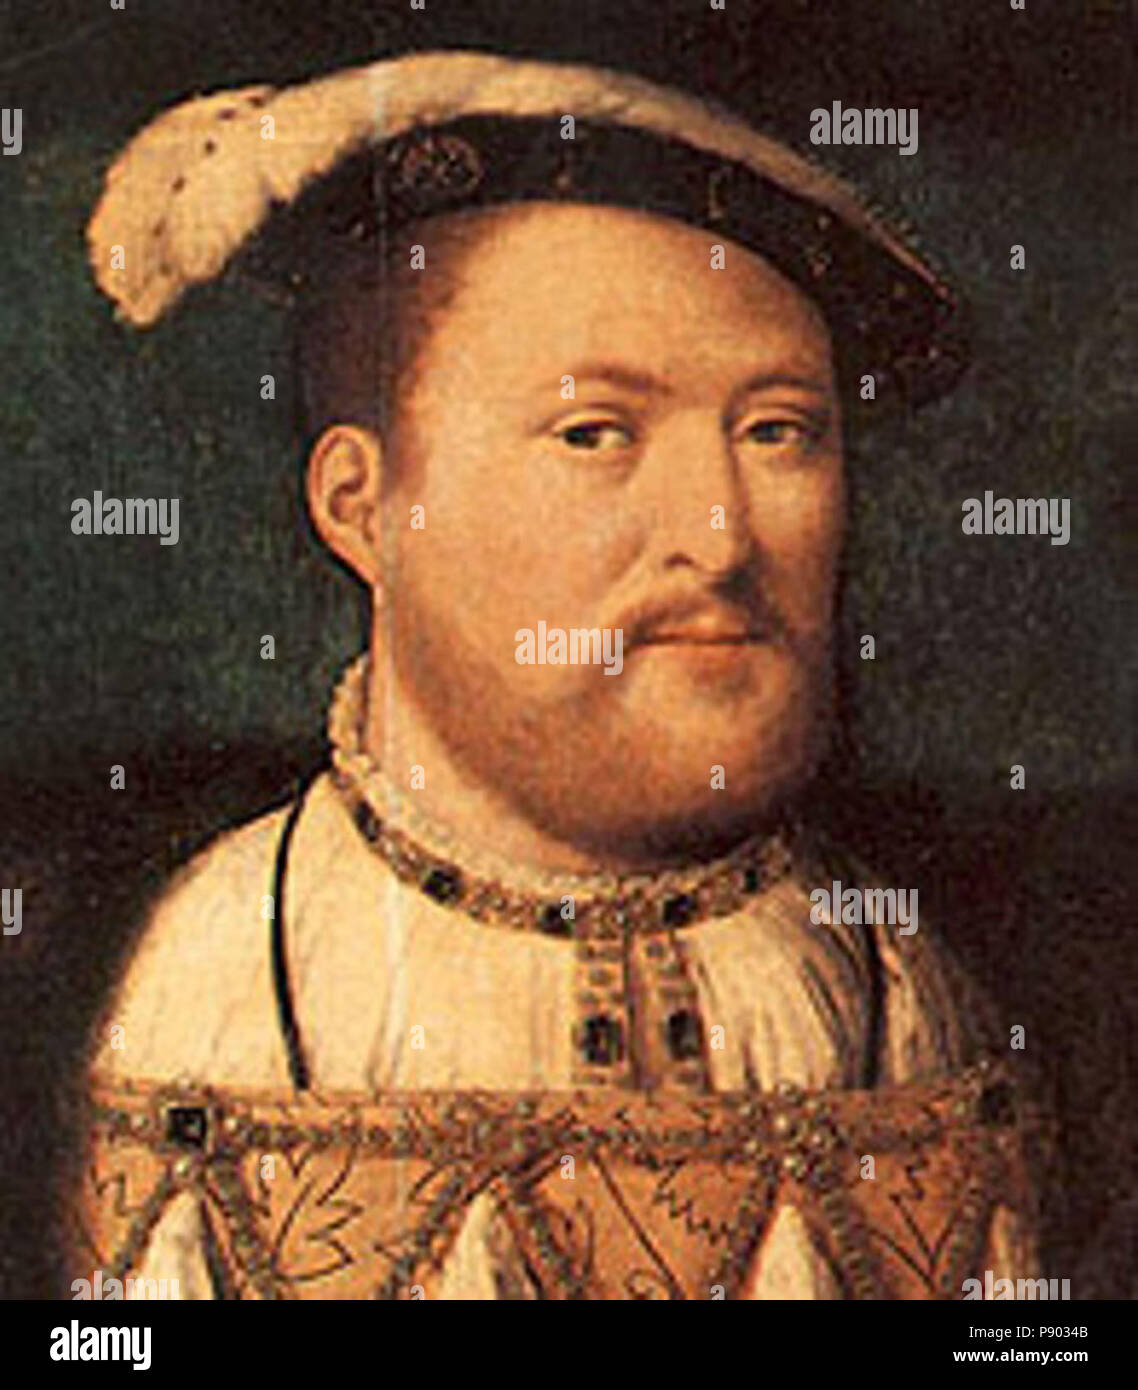 El rey Enrique VIII retrato Foto de stock